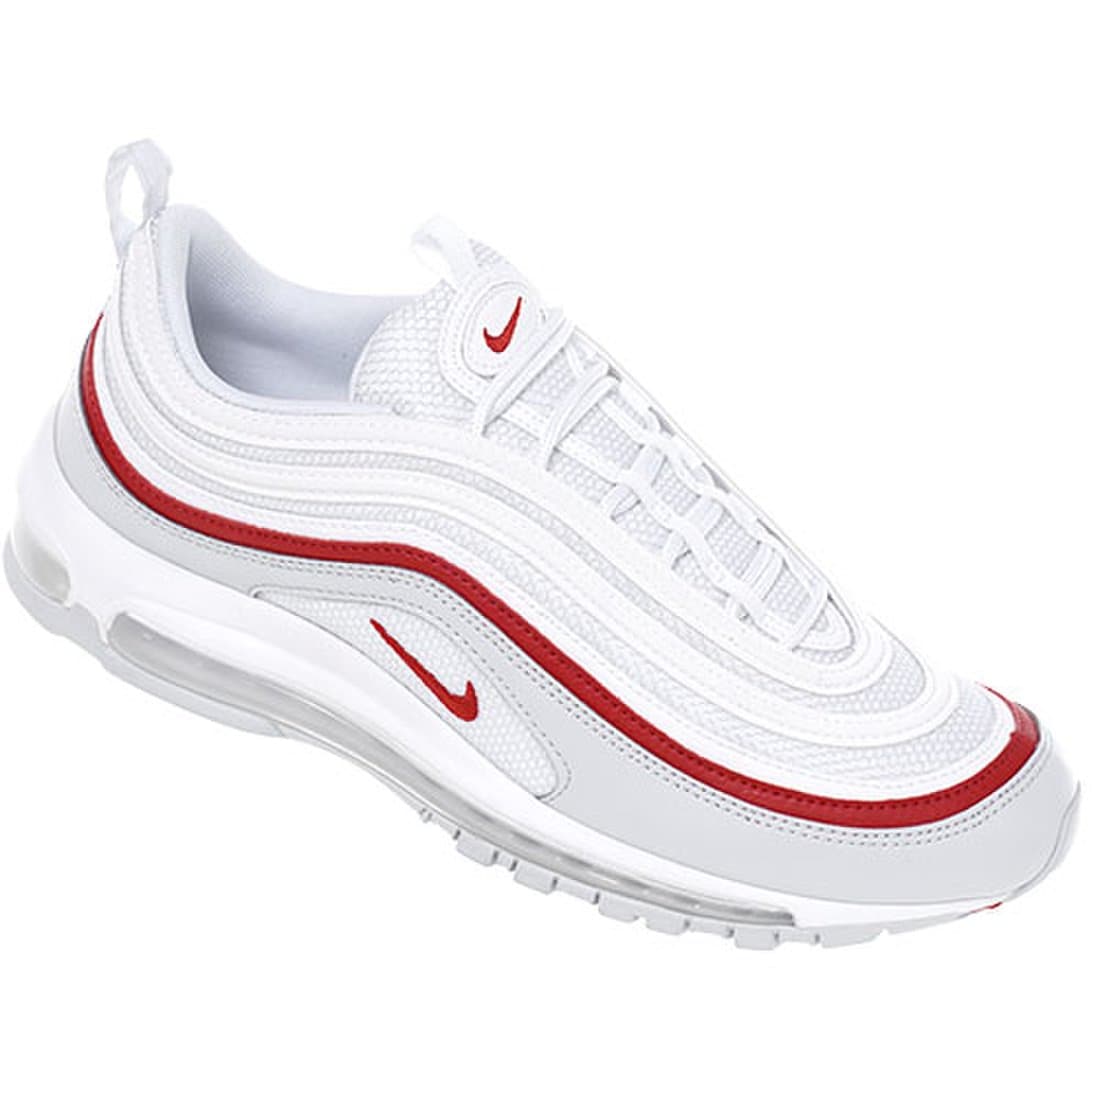 운동화 Ar5531-002 나이키 에어 맥스 97 Og (화이트레드) Nike Air 신발 런닝화 에어맥스 스카치 프리미엄 남자 남성  여자 패션운동화 트레이닝화 트래킹화 워킹화 헬스화 조깅화 흰색, 이마트몰, 당신과 가장 가까운 이마트